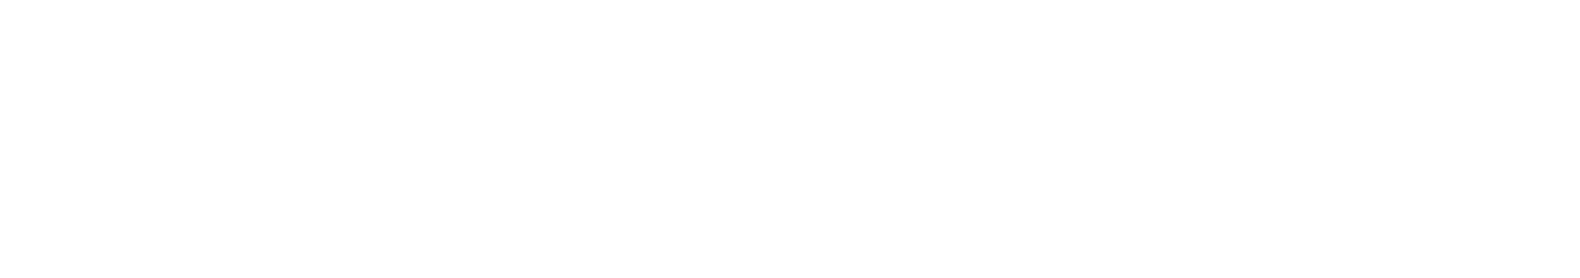 CoStar Group logo grand pour les fonds sombres (PNG transparent)